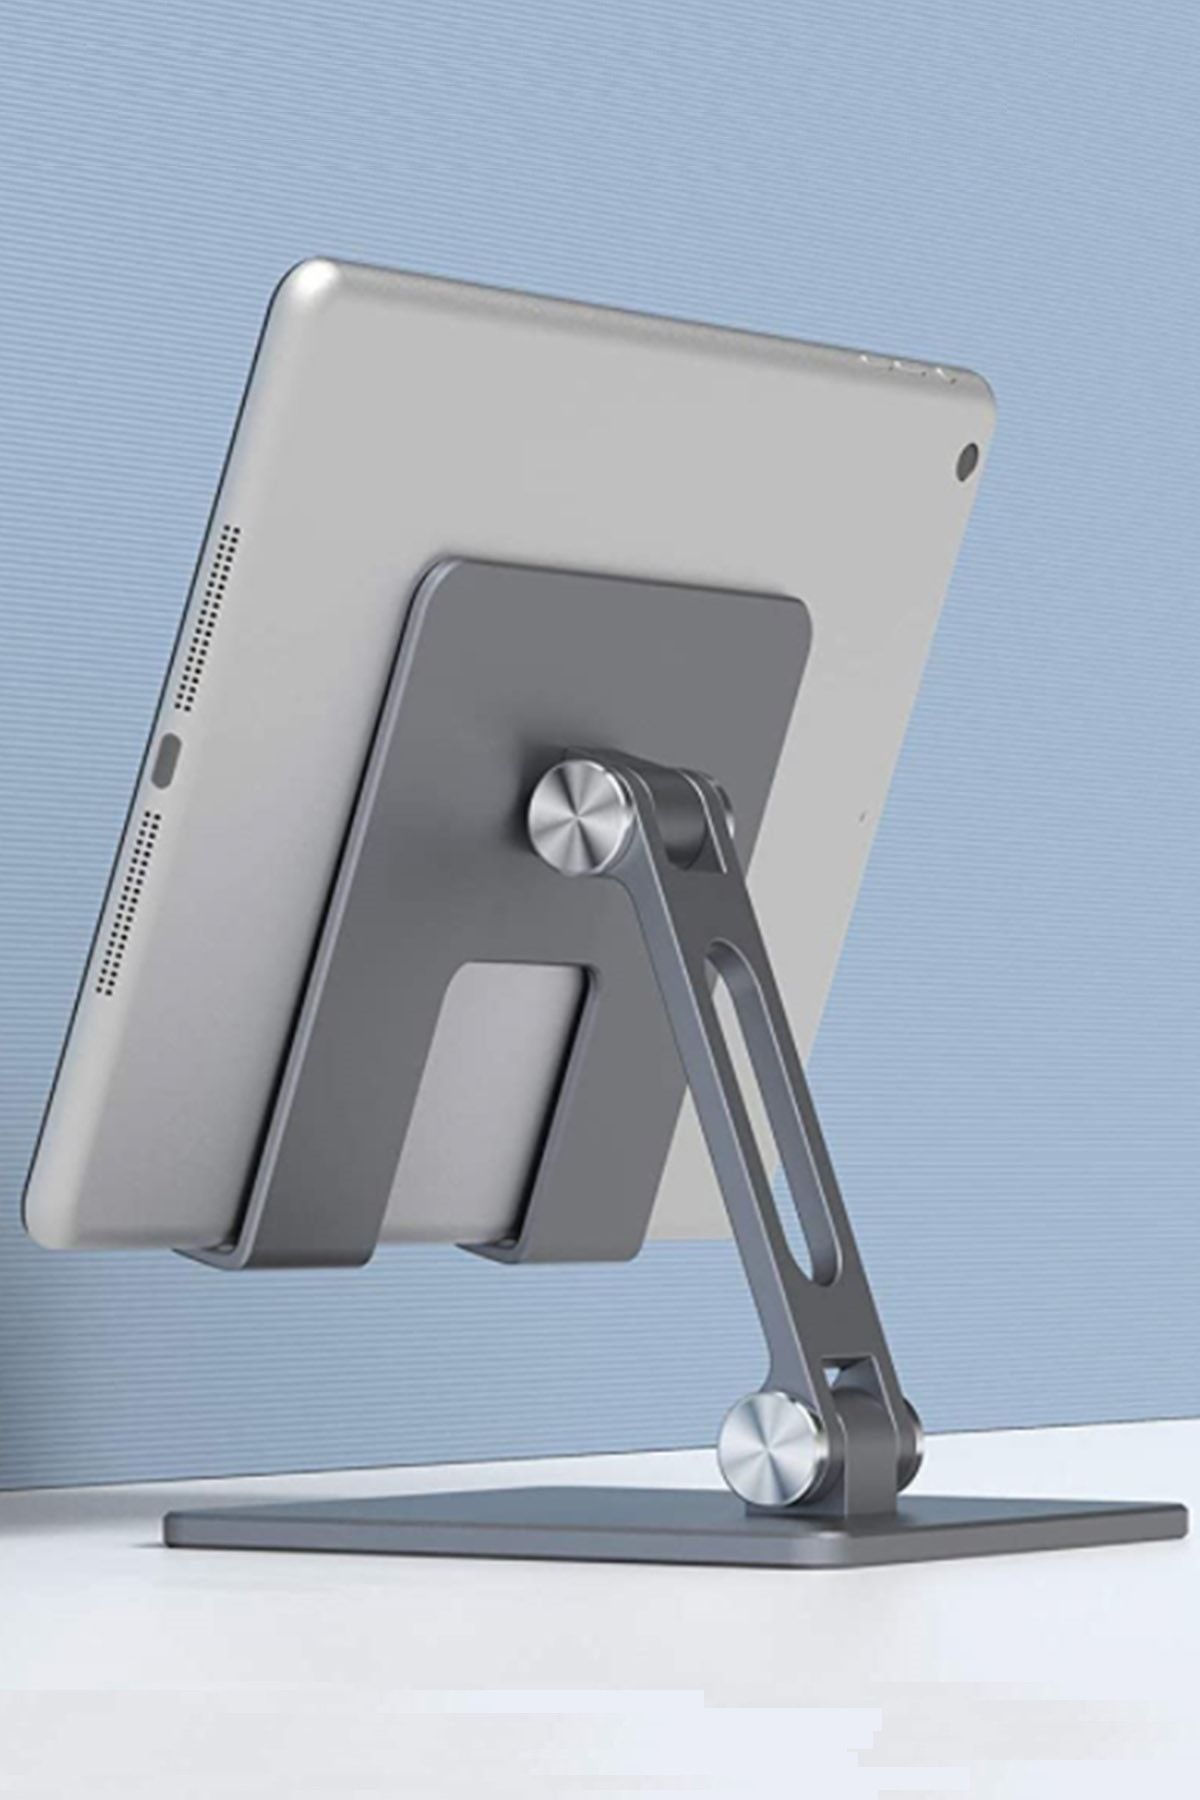 TeknoExpress Masaüstü Için Alüminyum Iphone Ipad Xiaomi Samsung Huawei Tablet Ve Telefon Tutucu Standı Yükseltici